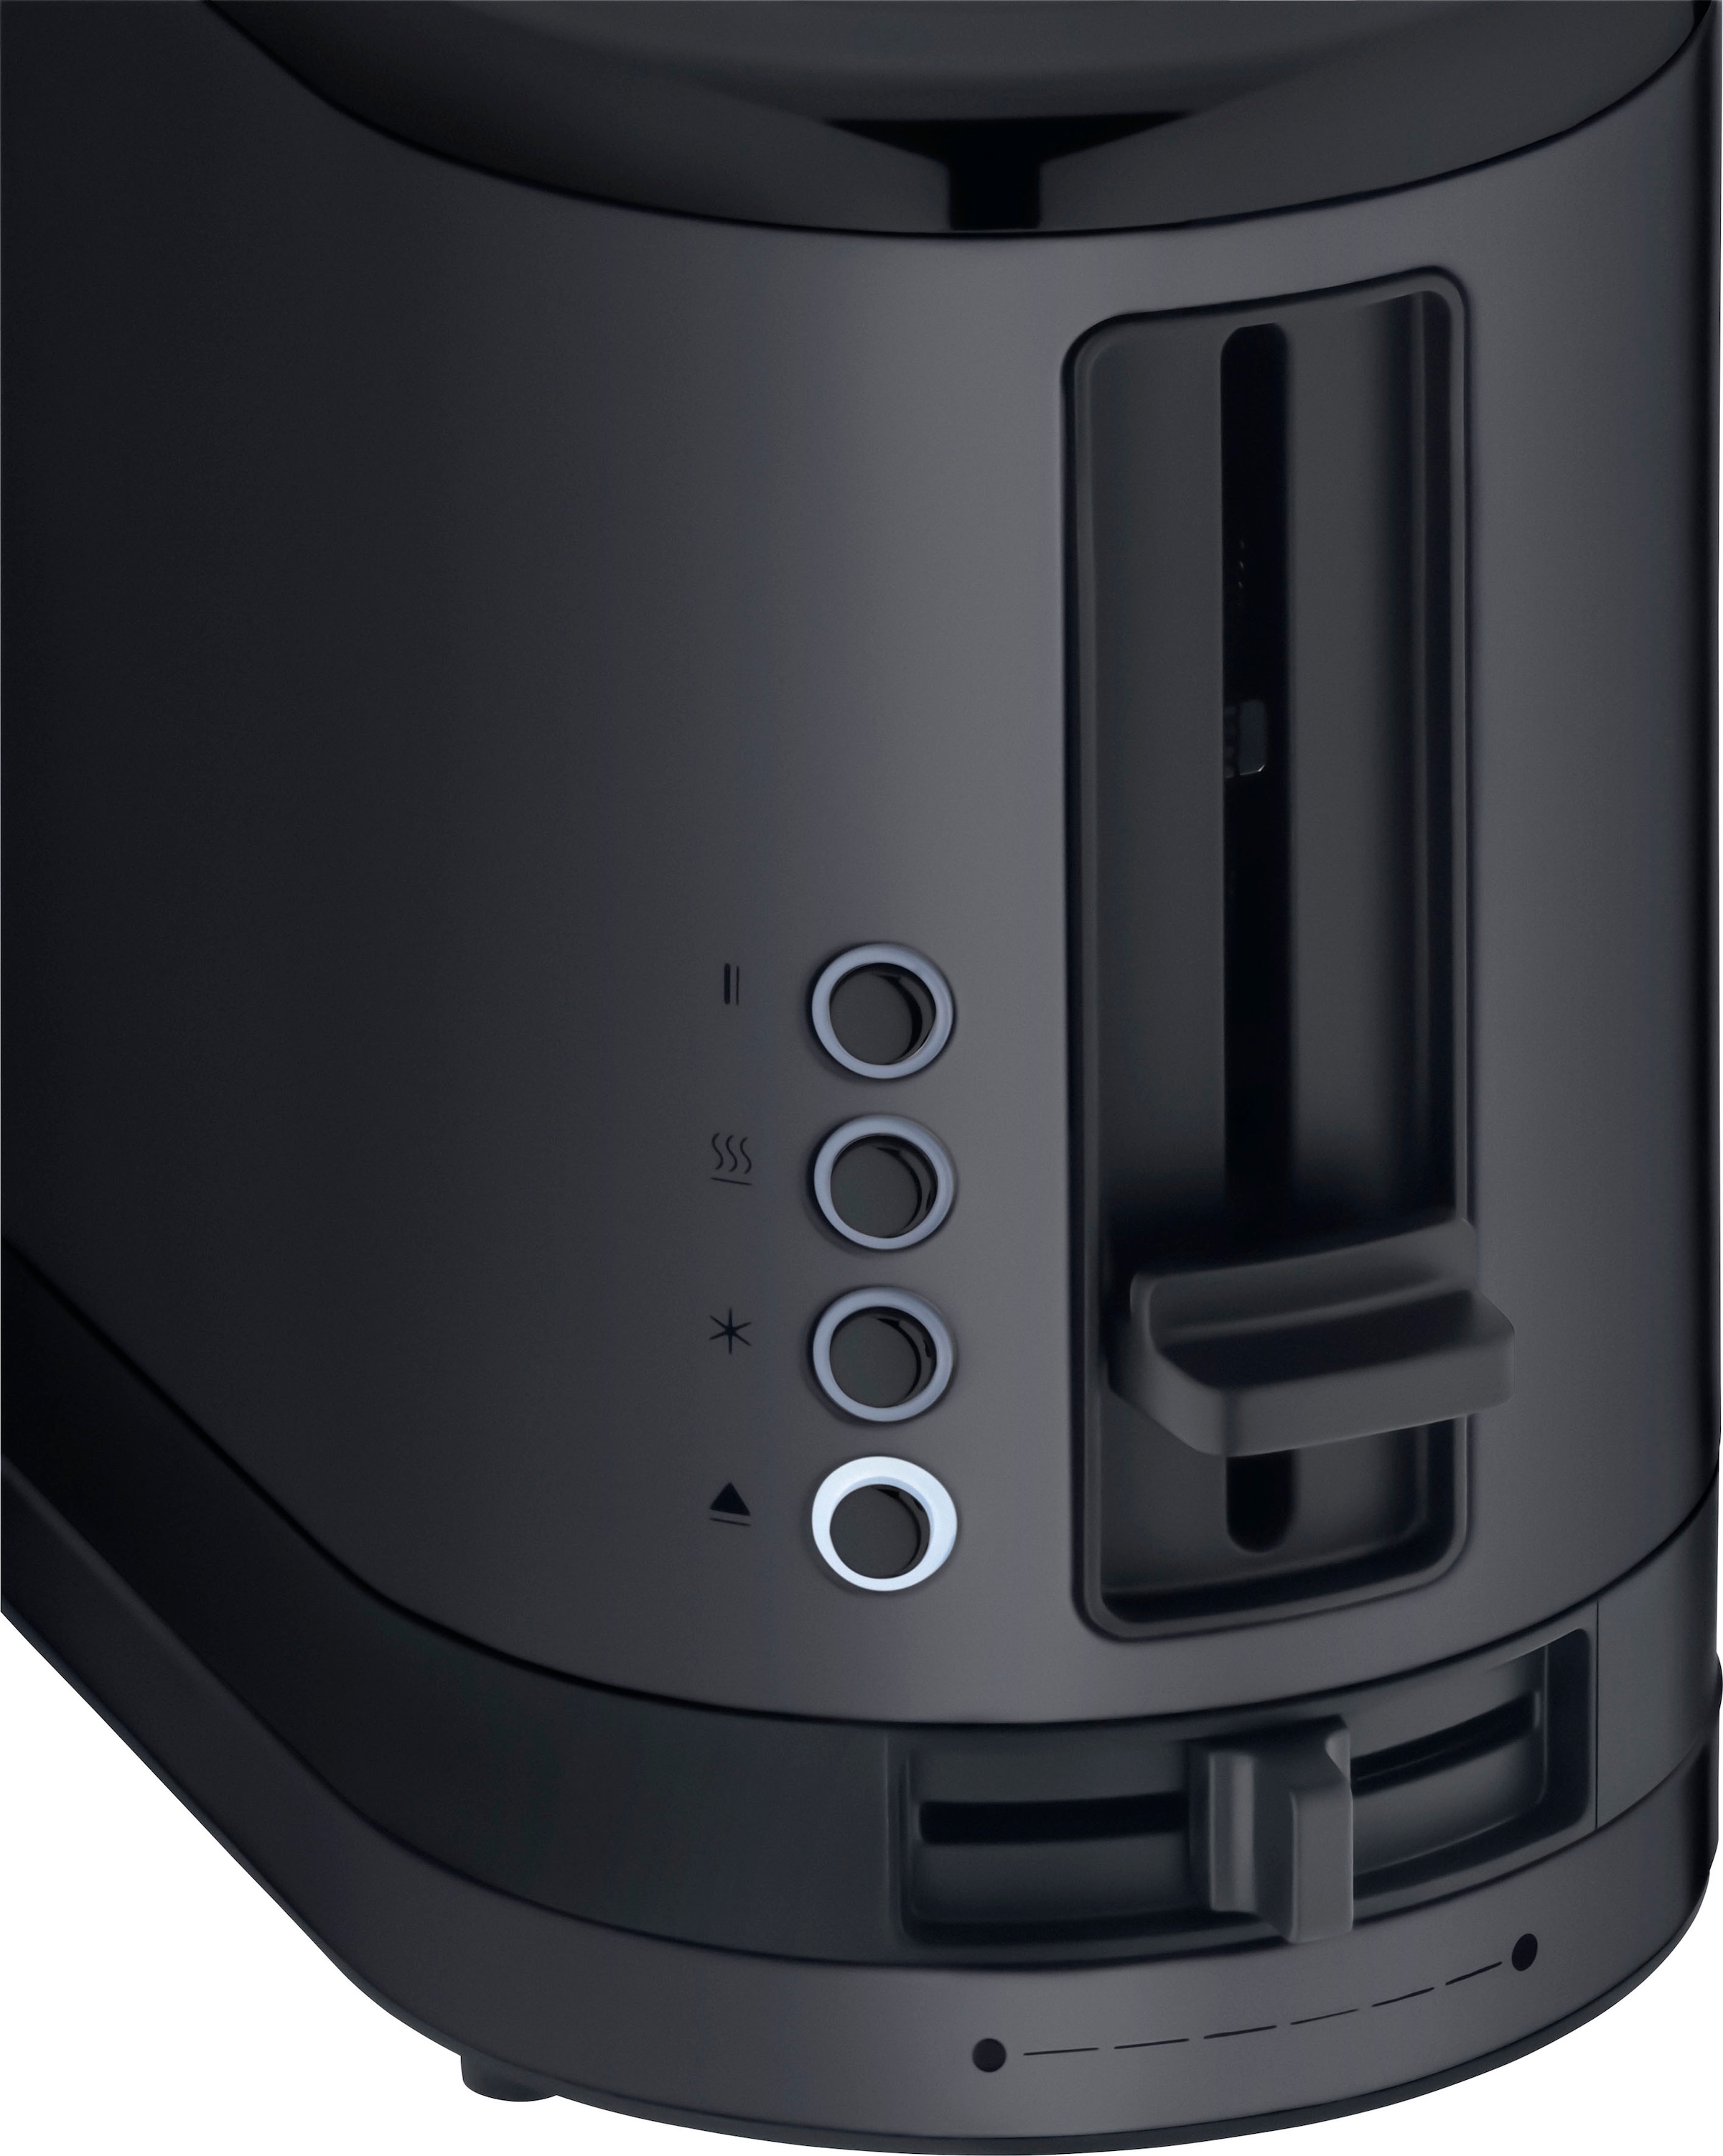 WMF Toaster »KÜCHENminis Deep Black«, 1 langer Schlitz, 980 W